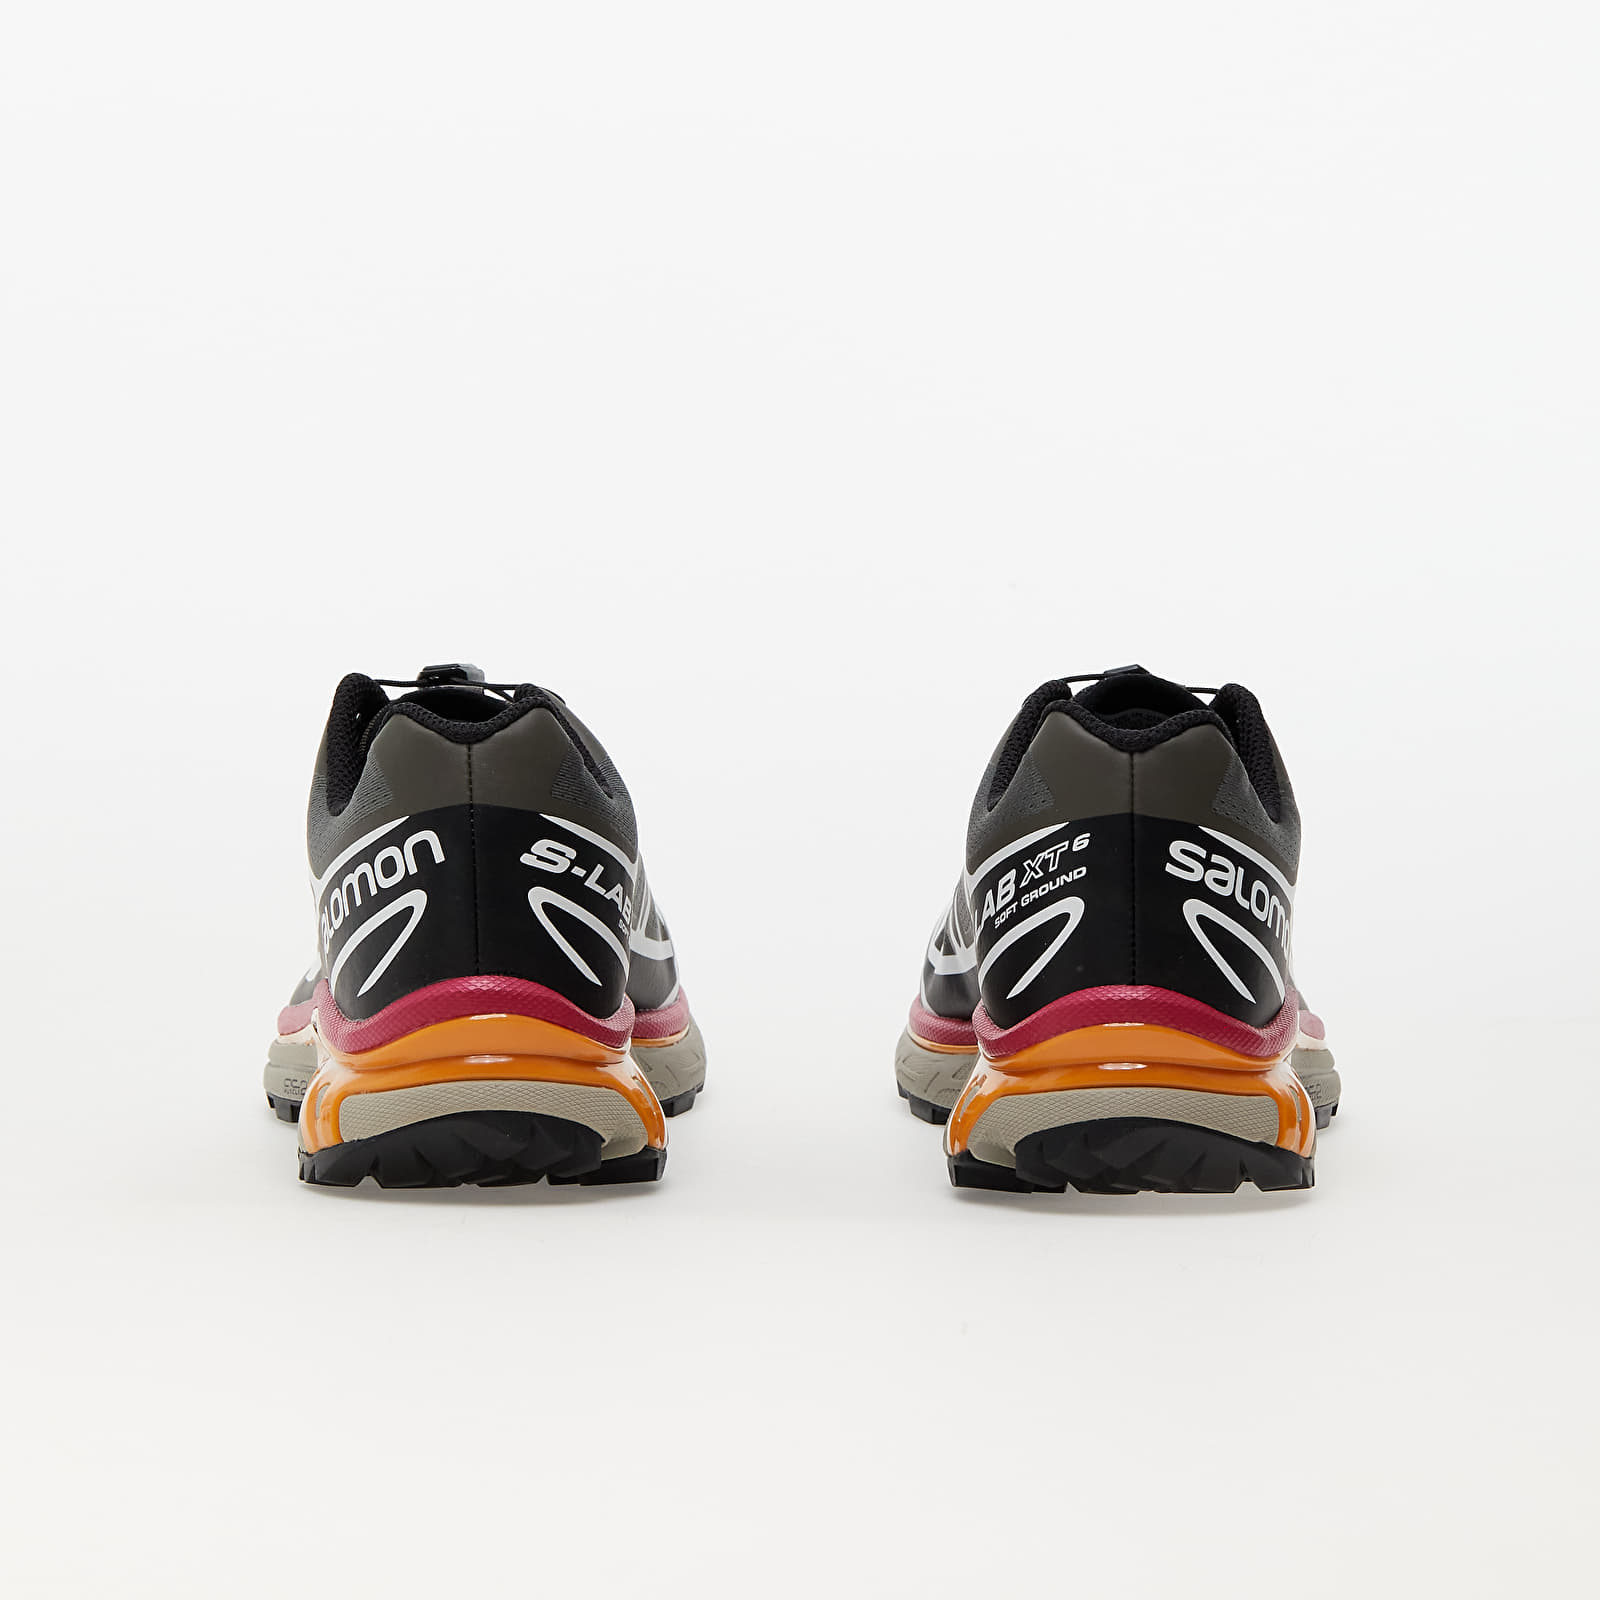 Men's shoes Salomon XT-6 Recut Beluga/ Black/ Russet Orange